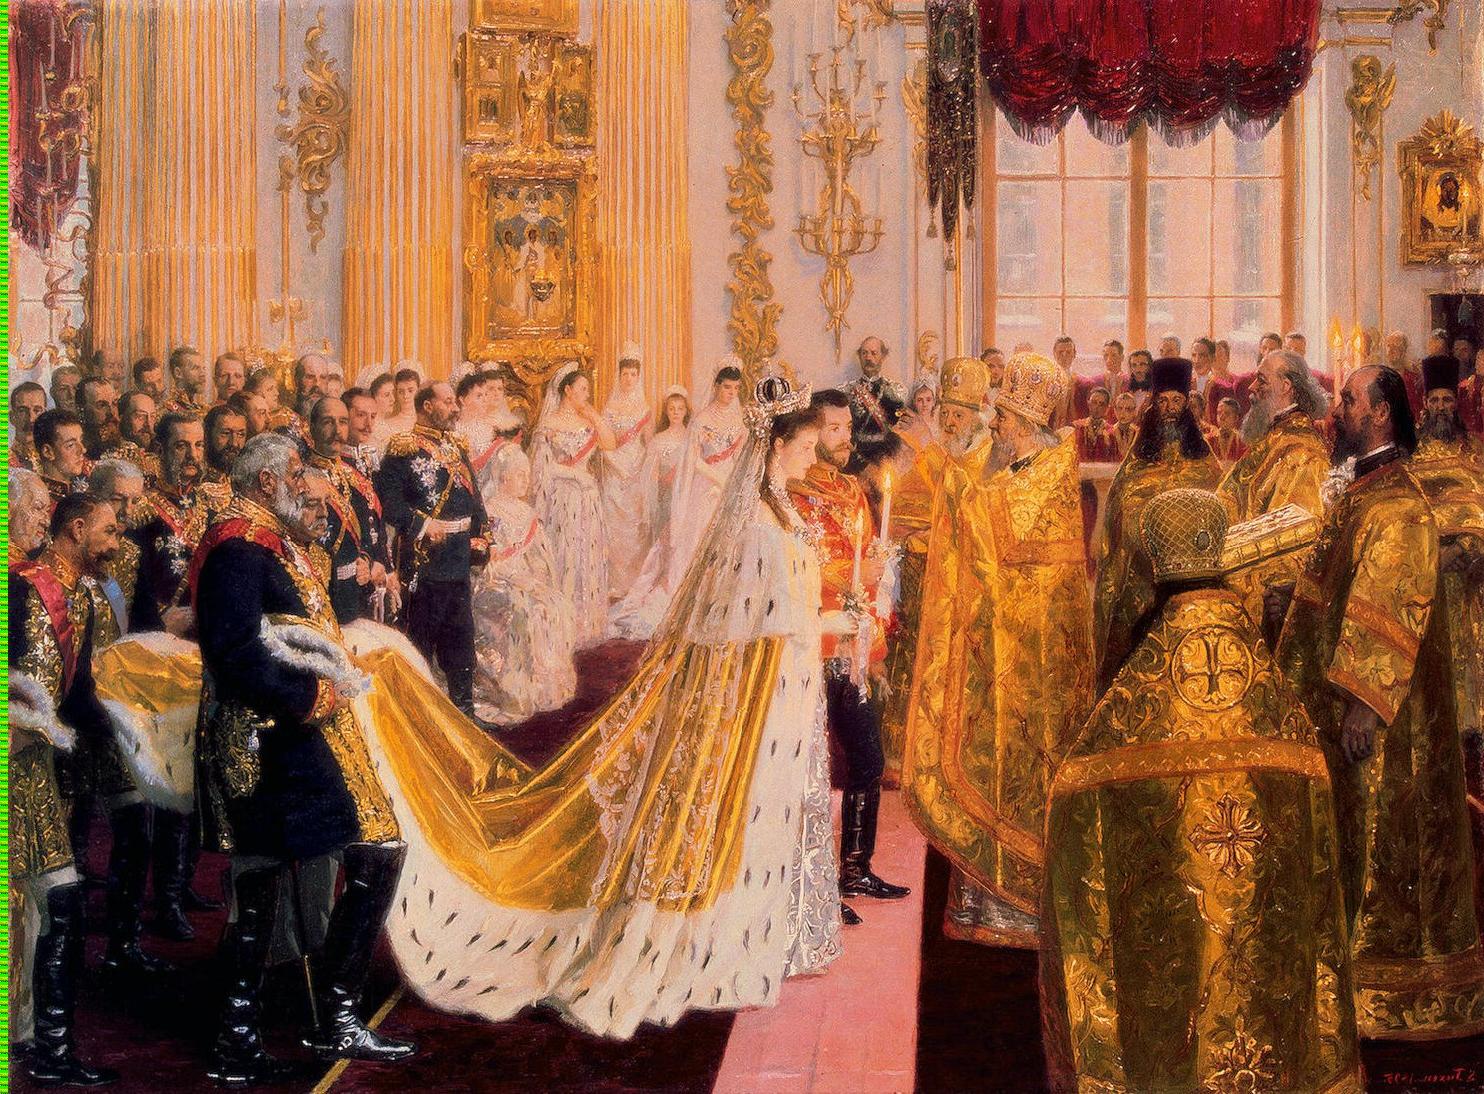 Wedding of Nicholas II and